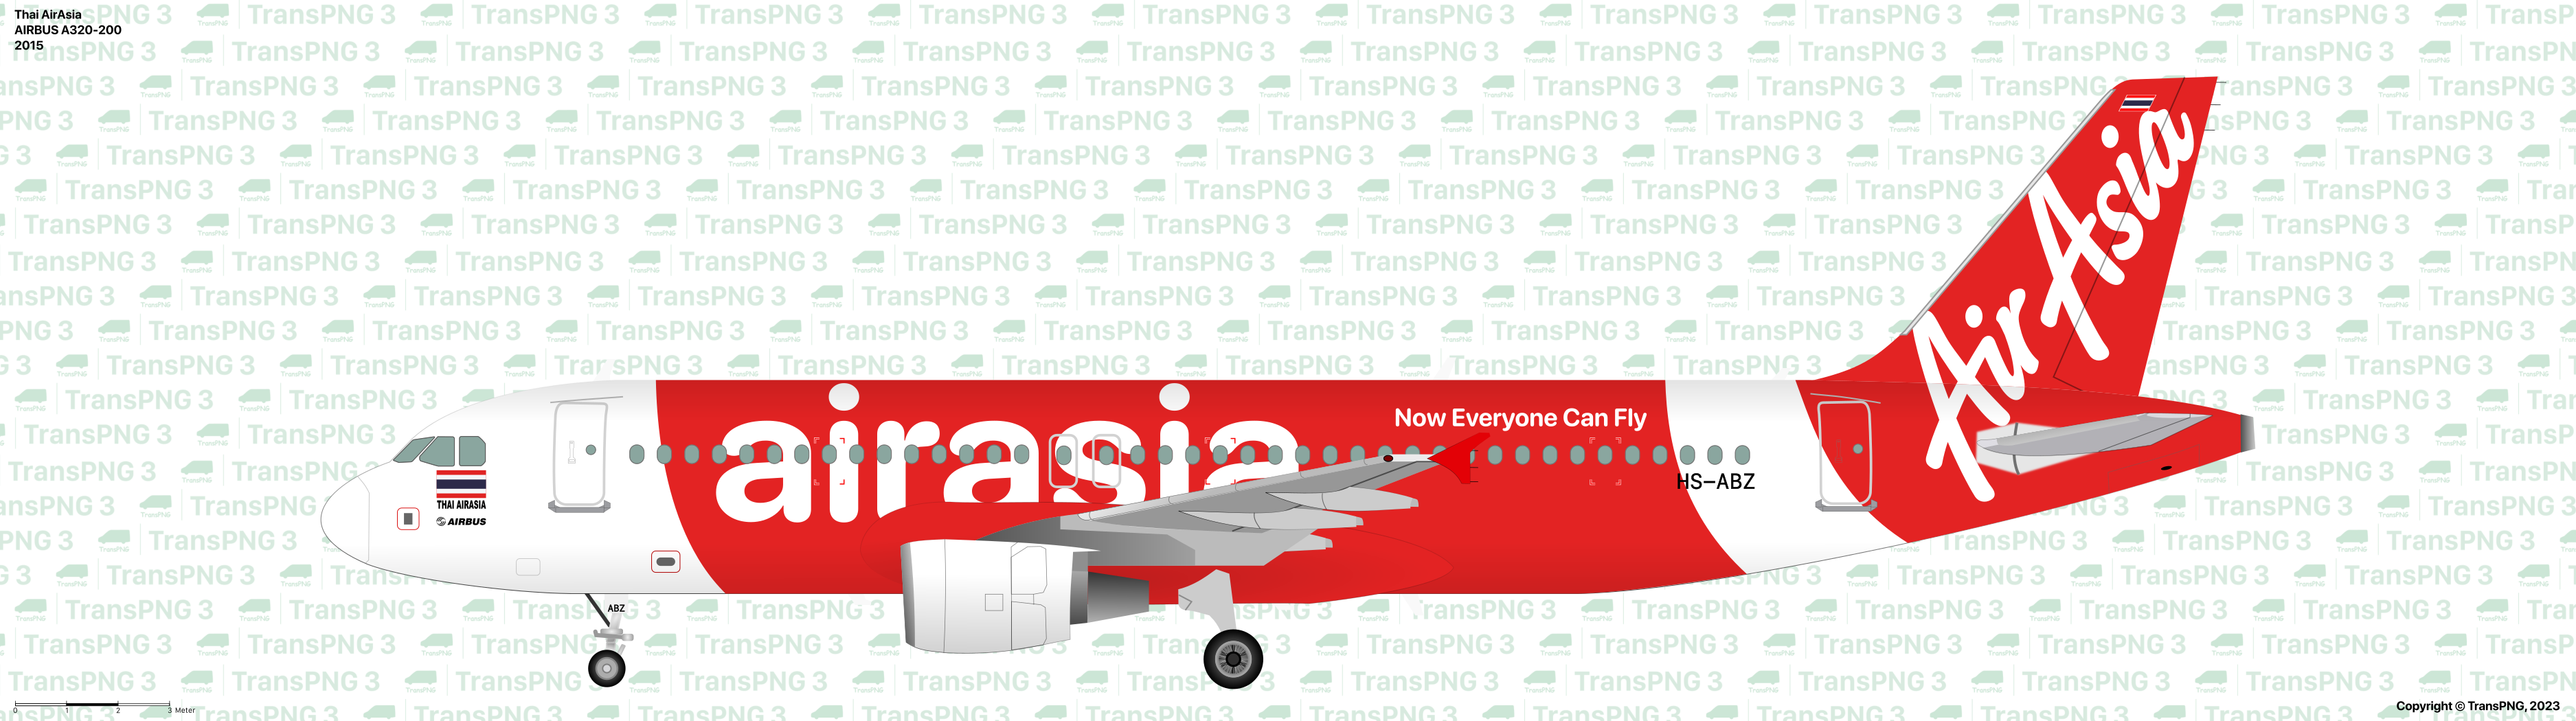 TransPNG | 分享世界各地多种交通工具的优秀绘图 - 客机 53279120360_8282832465_o